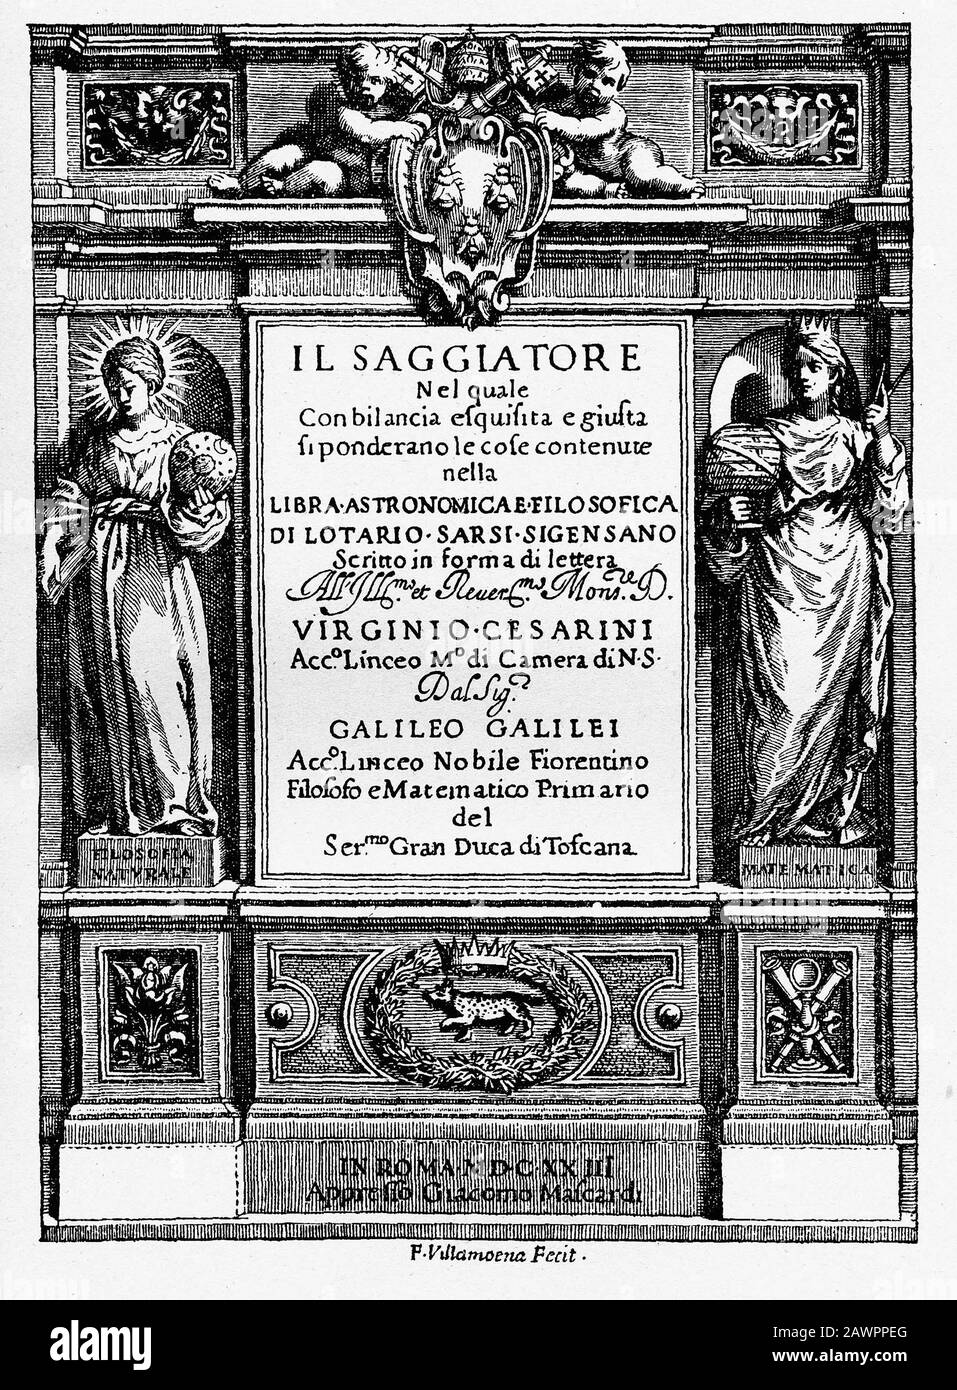 1623, ROMA, ITALIEN: Francesco Villamenas Frontispiz für Galileo Galileis Il Saggiatore, herausgegeben von der en: Lincean Academy im Jahre 1623 in Rom Stockfoto